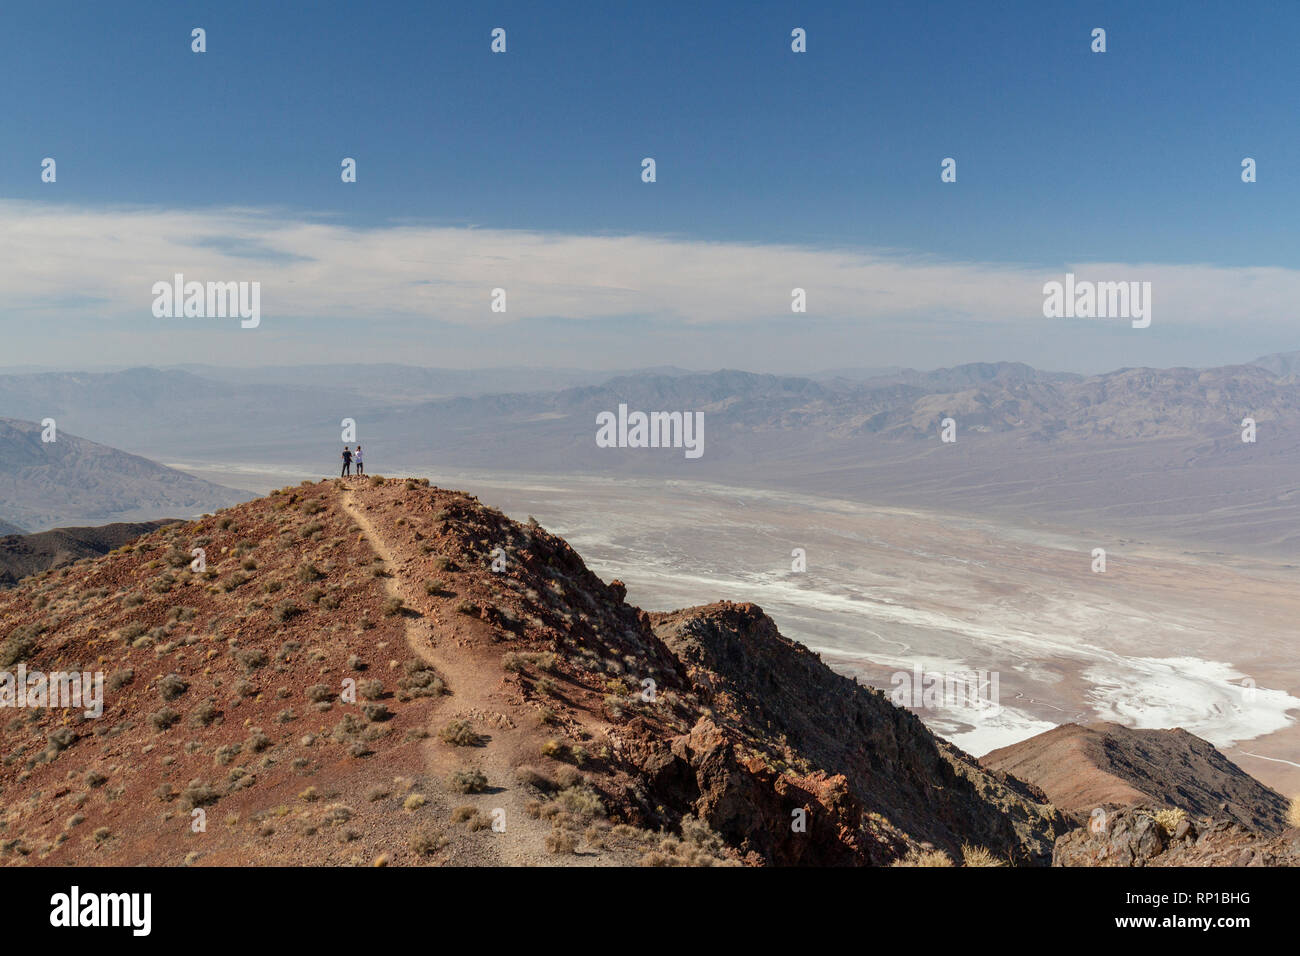 Tôt le matin, voir l'avis de Dantès à env sud, passé un couple de personnes, Death Valley National Park, California, United States. Banque D'Images